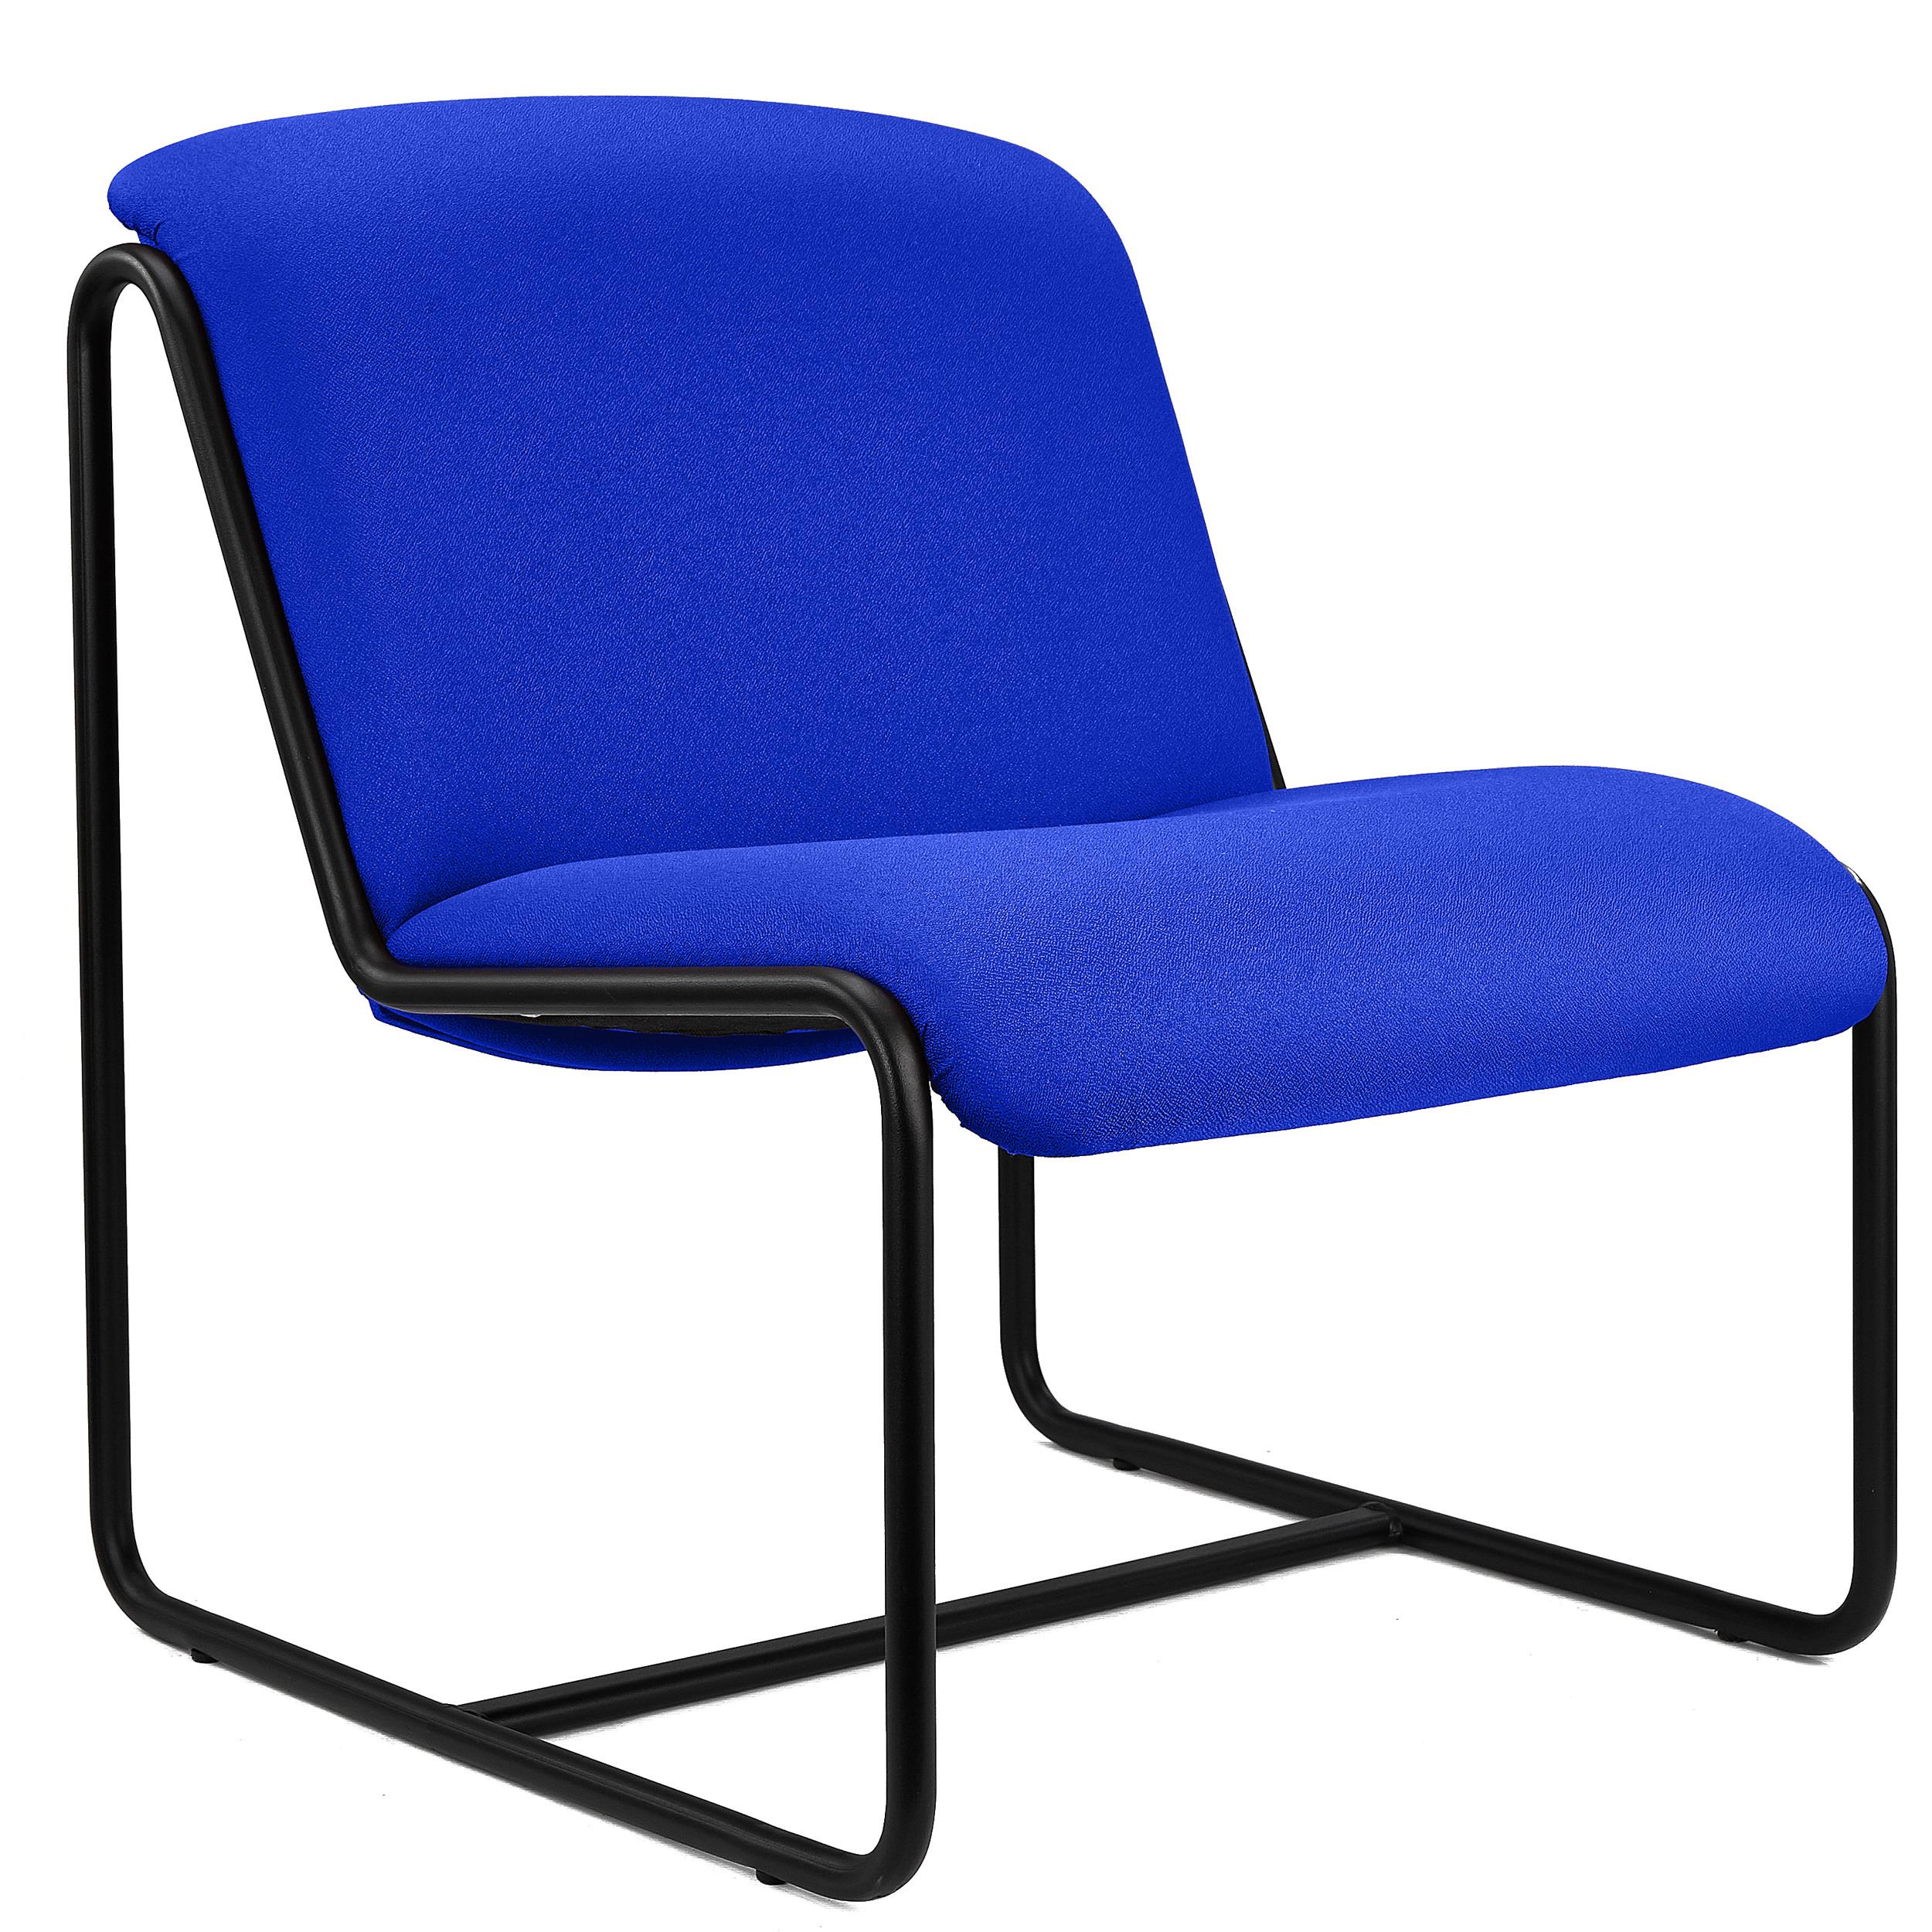 Chaise visiteur LIMA, Design Exclusif, Structure Métallique, en Tissu Bleu